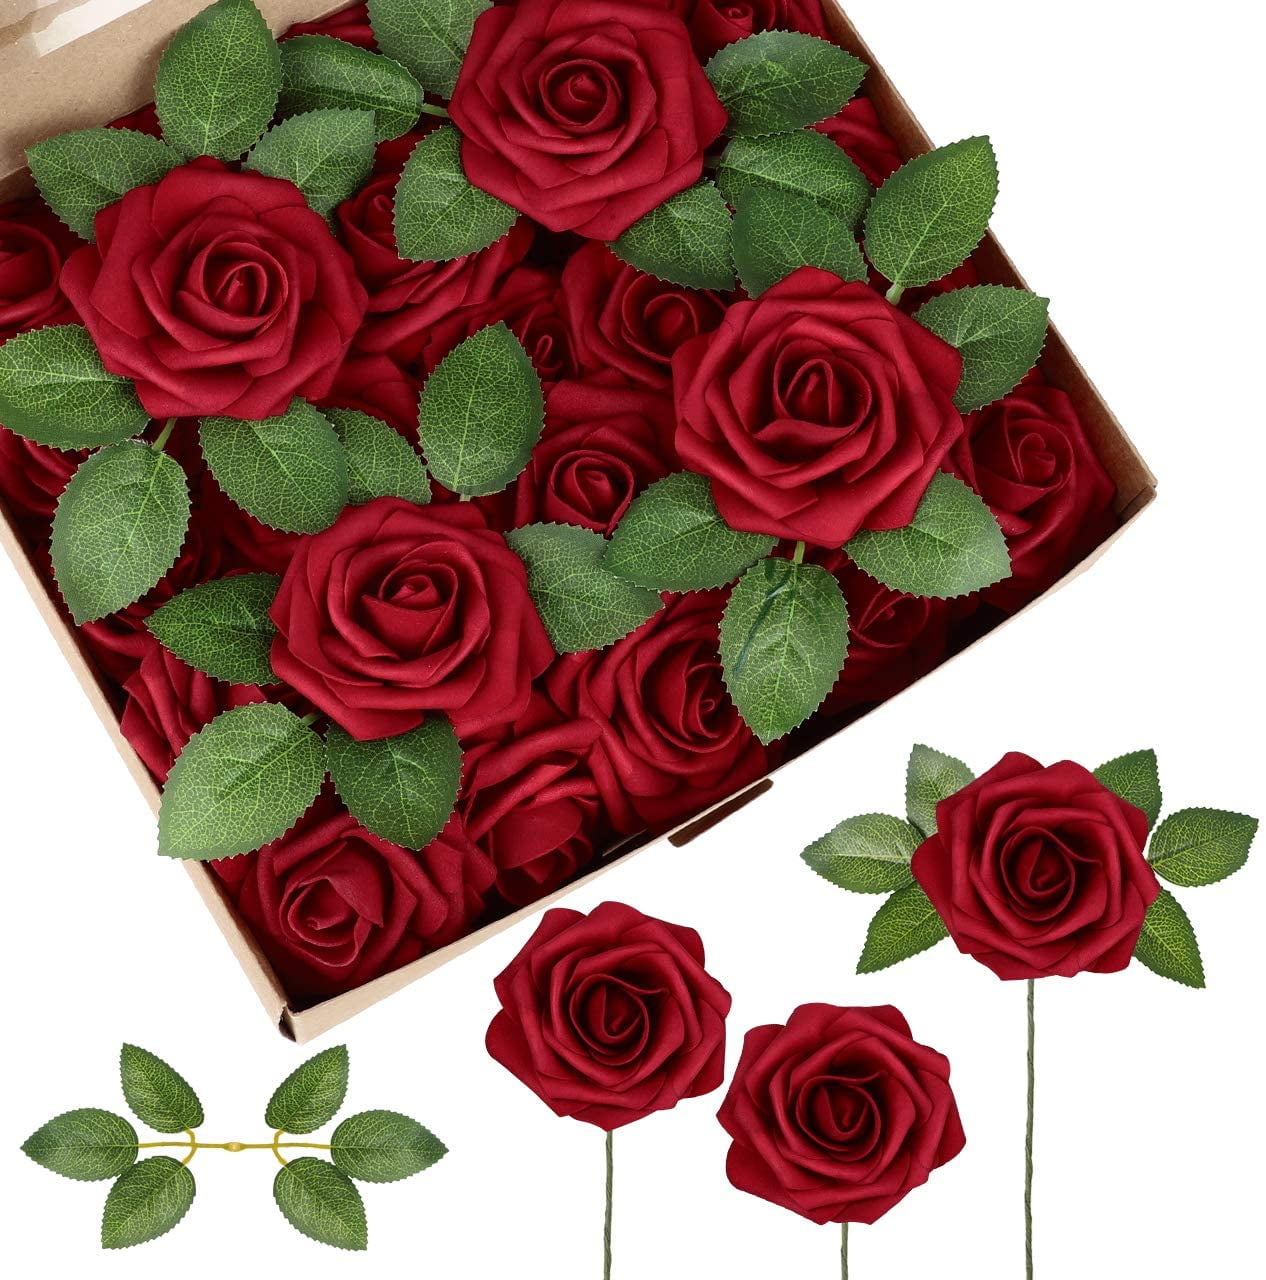 50 PCS Foam Roses Artificial Flower Wedding Bride Bouquet Party Decor DIY SI 